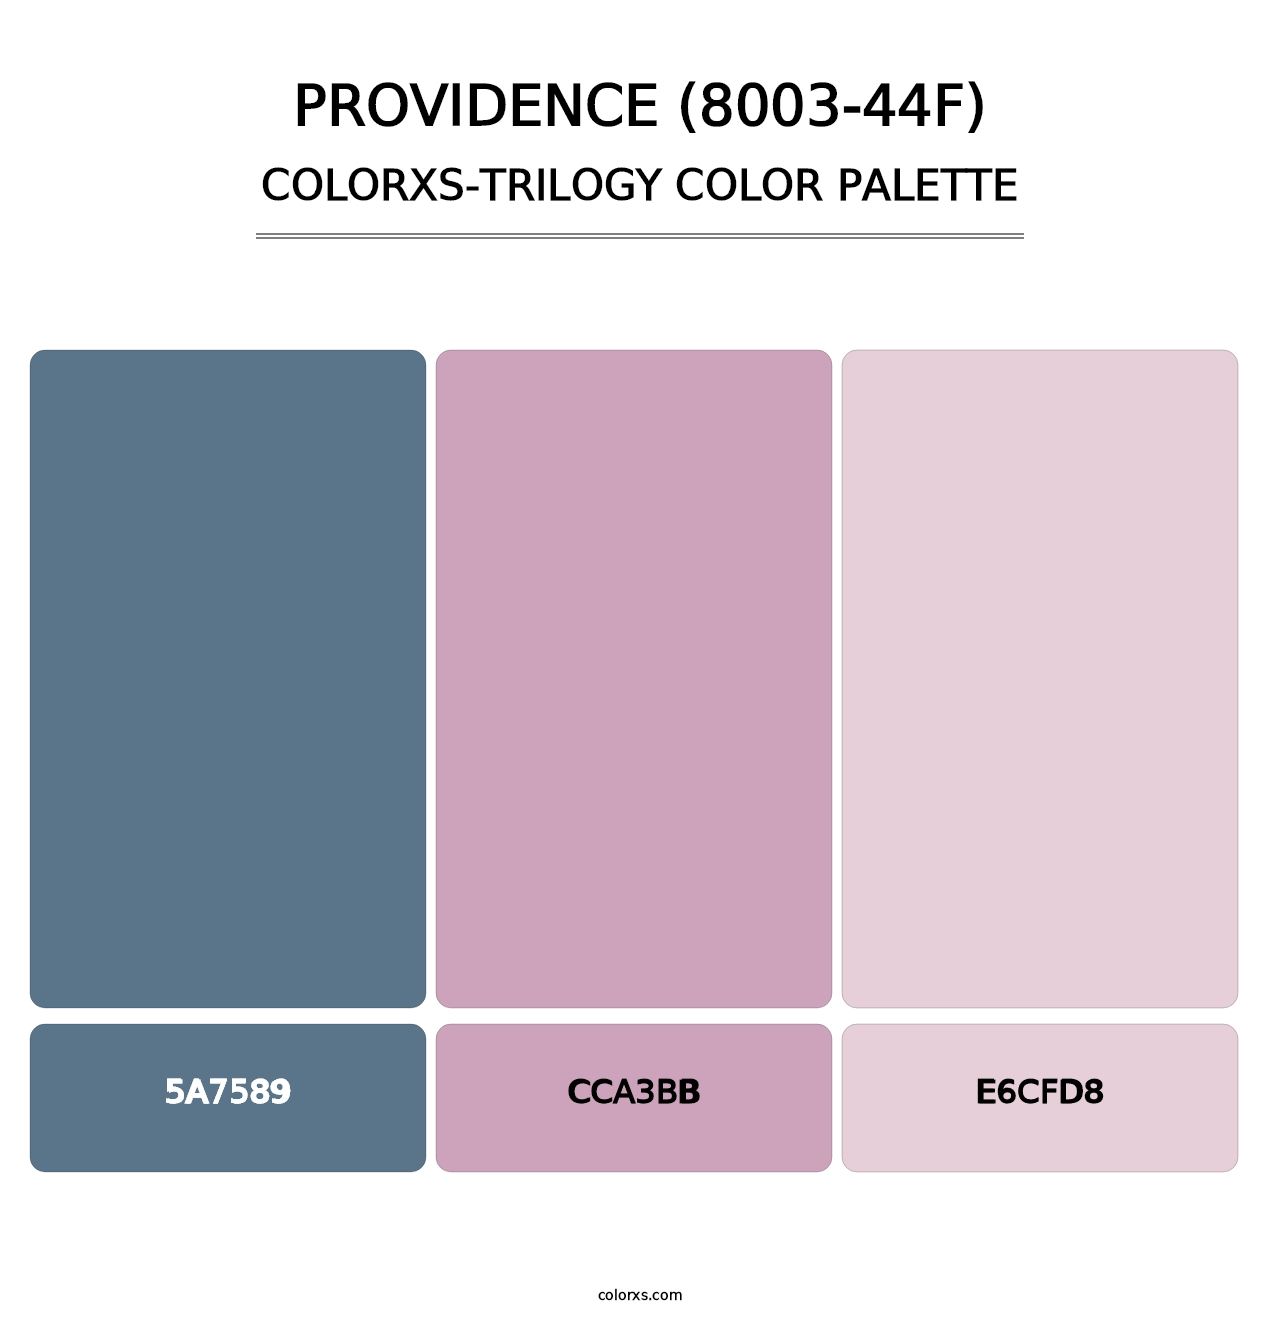 Providence (8003-44F) - Colorxs Trilogy Palette